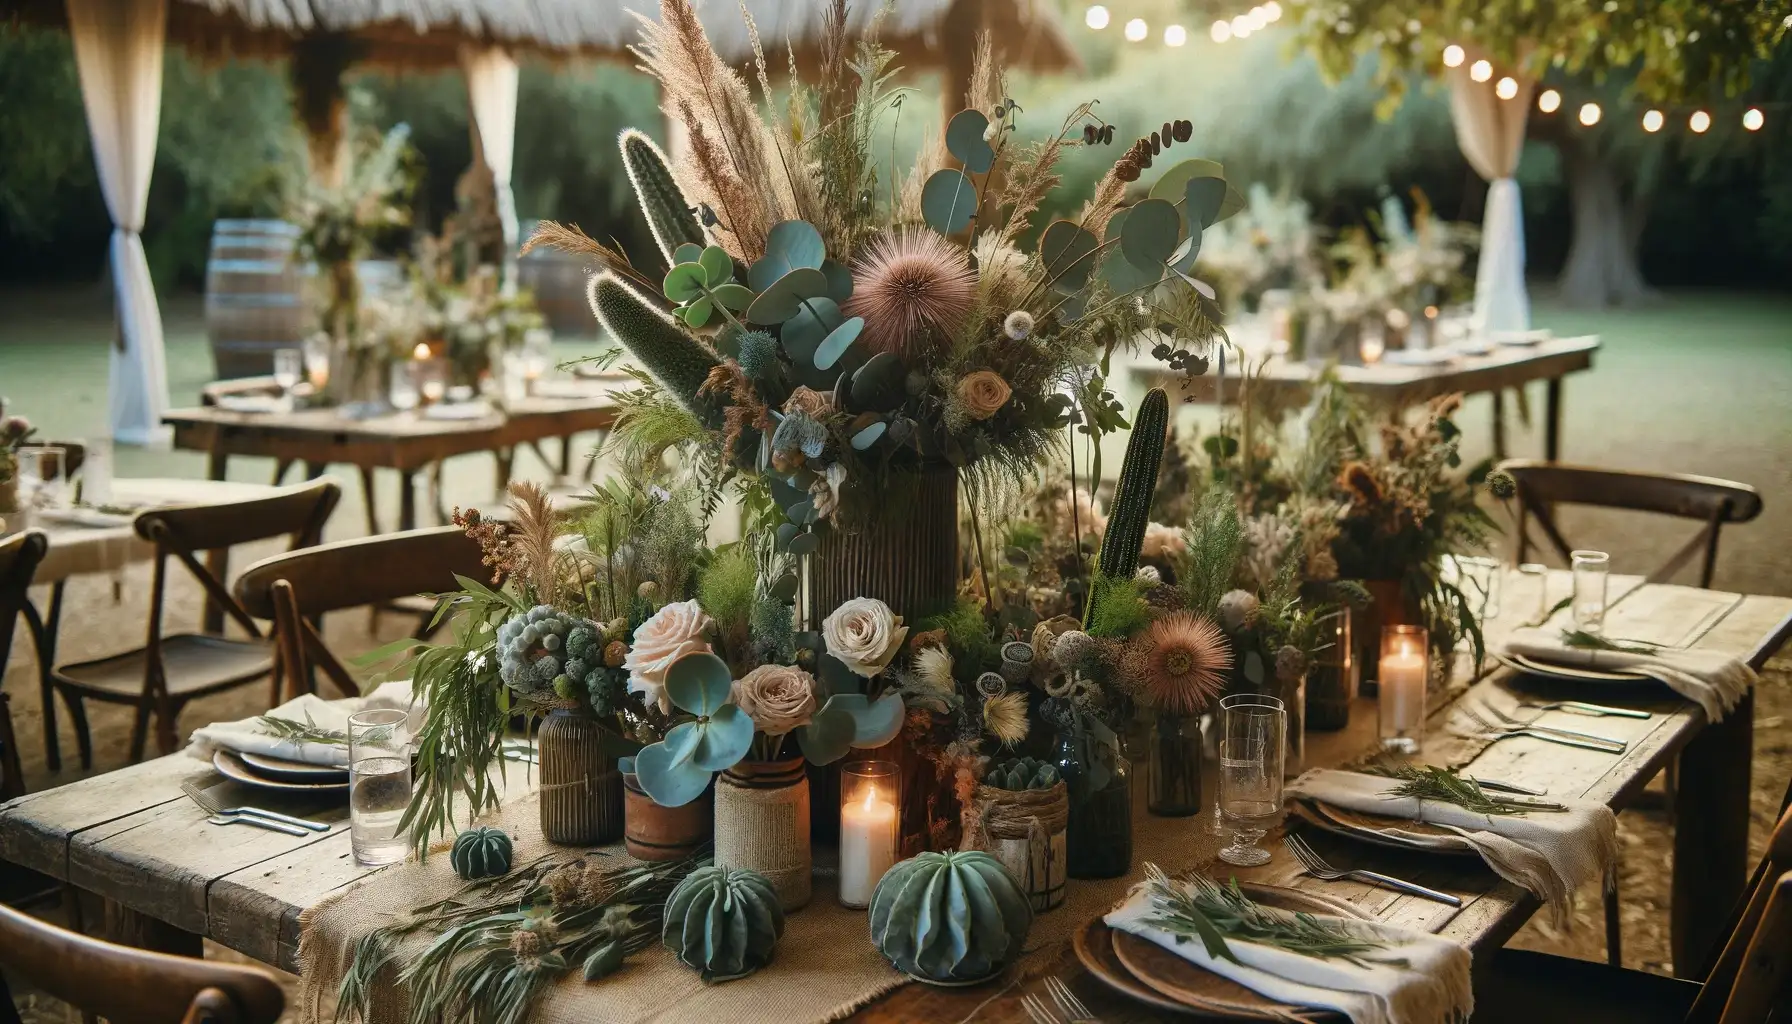 Mejor Una imagen en formato horizontal que ilustre un centro de mesa floral detallado en una boda botanica mostrando una combinacion de eucaliptos suculen